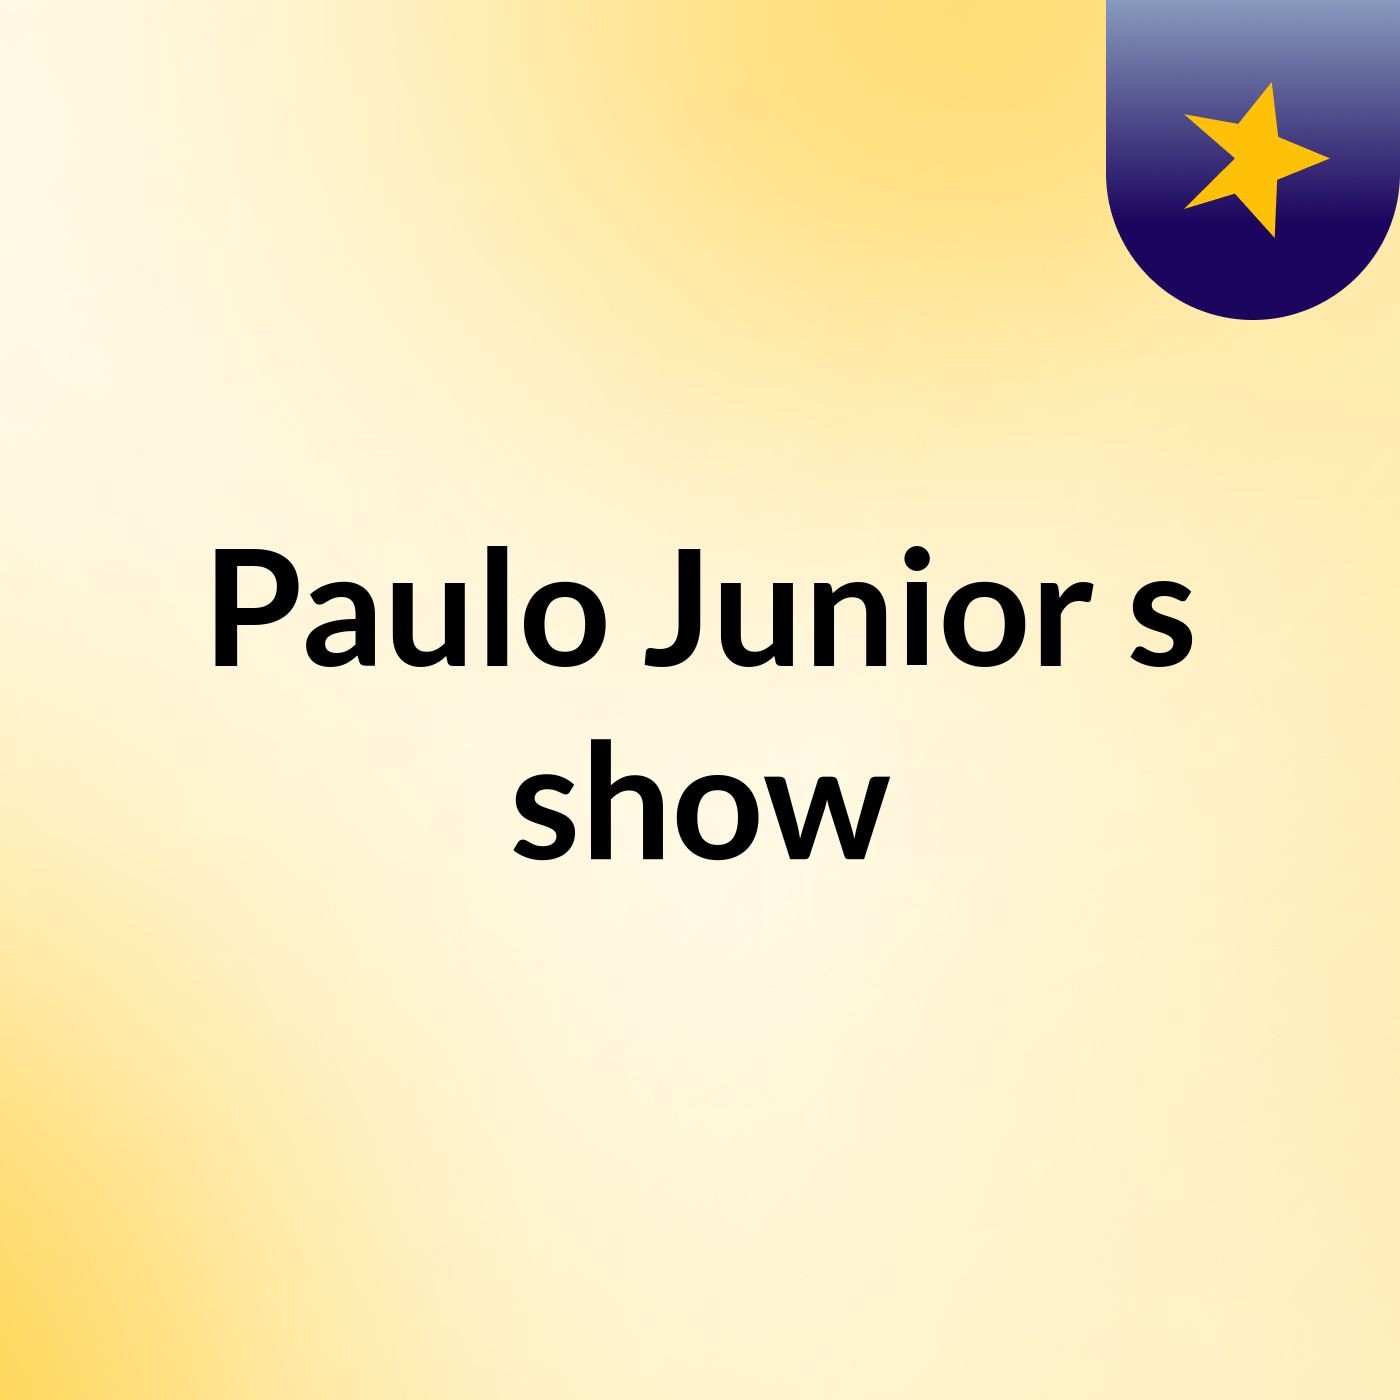 Paulo Junior's show